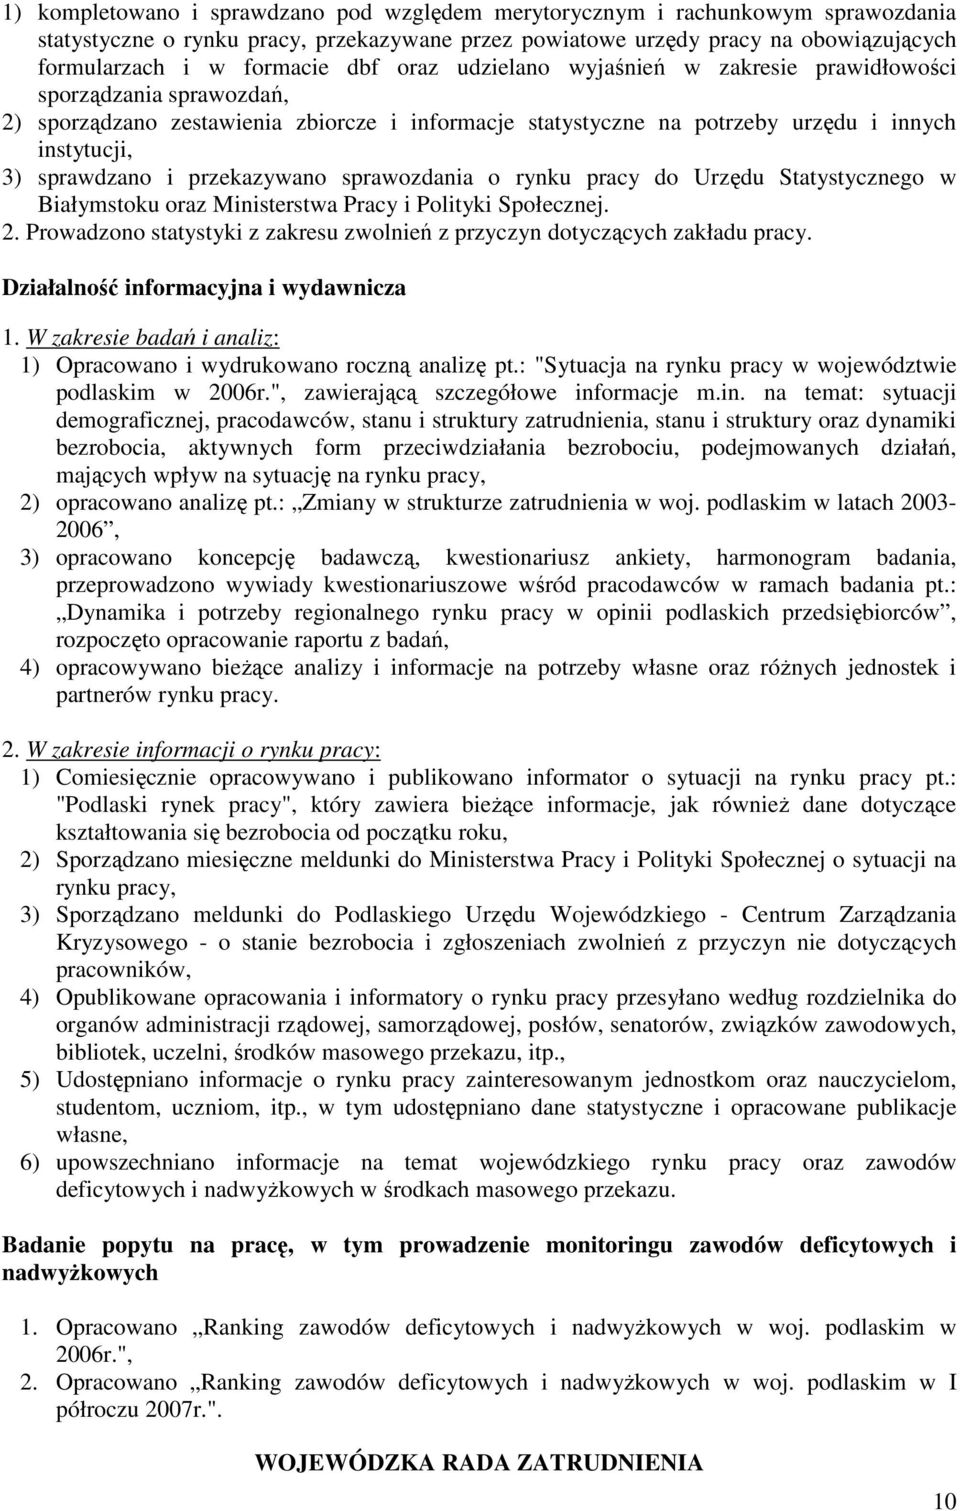 przekazywano sprawozdania o rynku pracy do Urzędu Statystycznego w Białymstoku oraz Ministerstwa Pracy i Polityki Społecznej. 2.